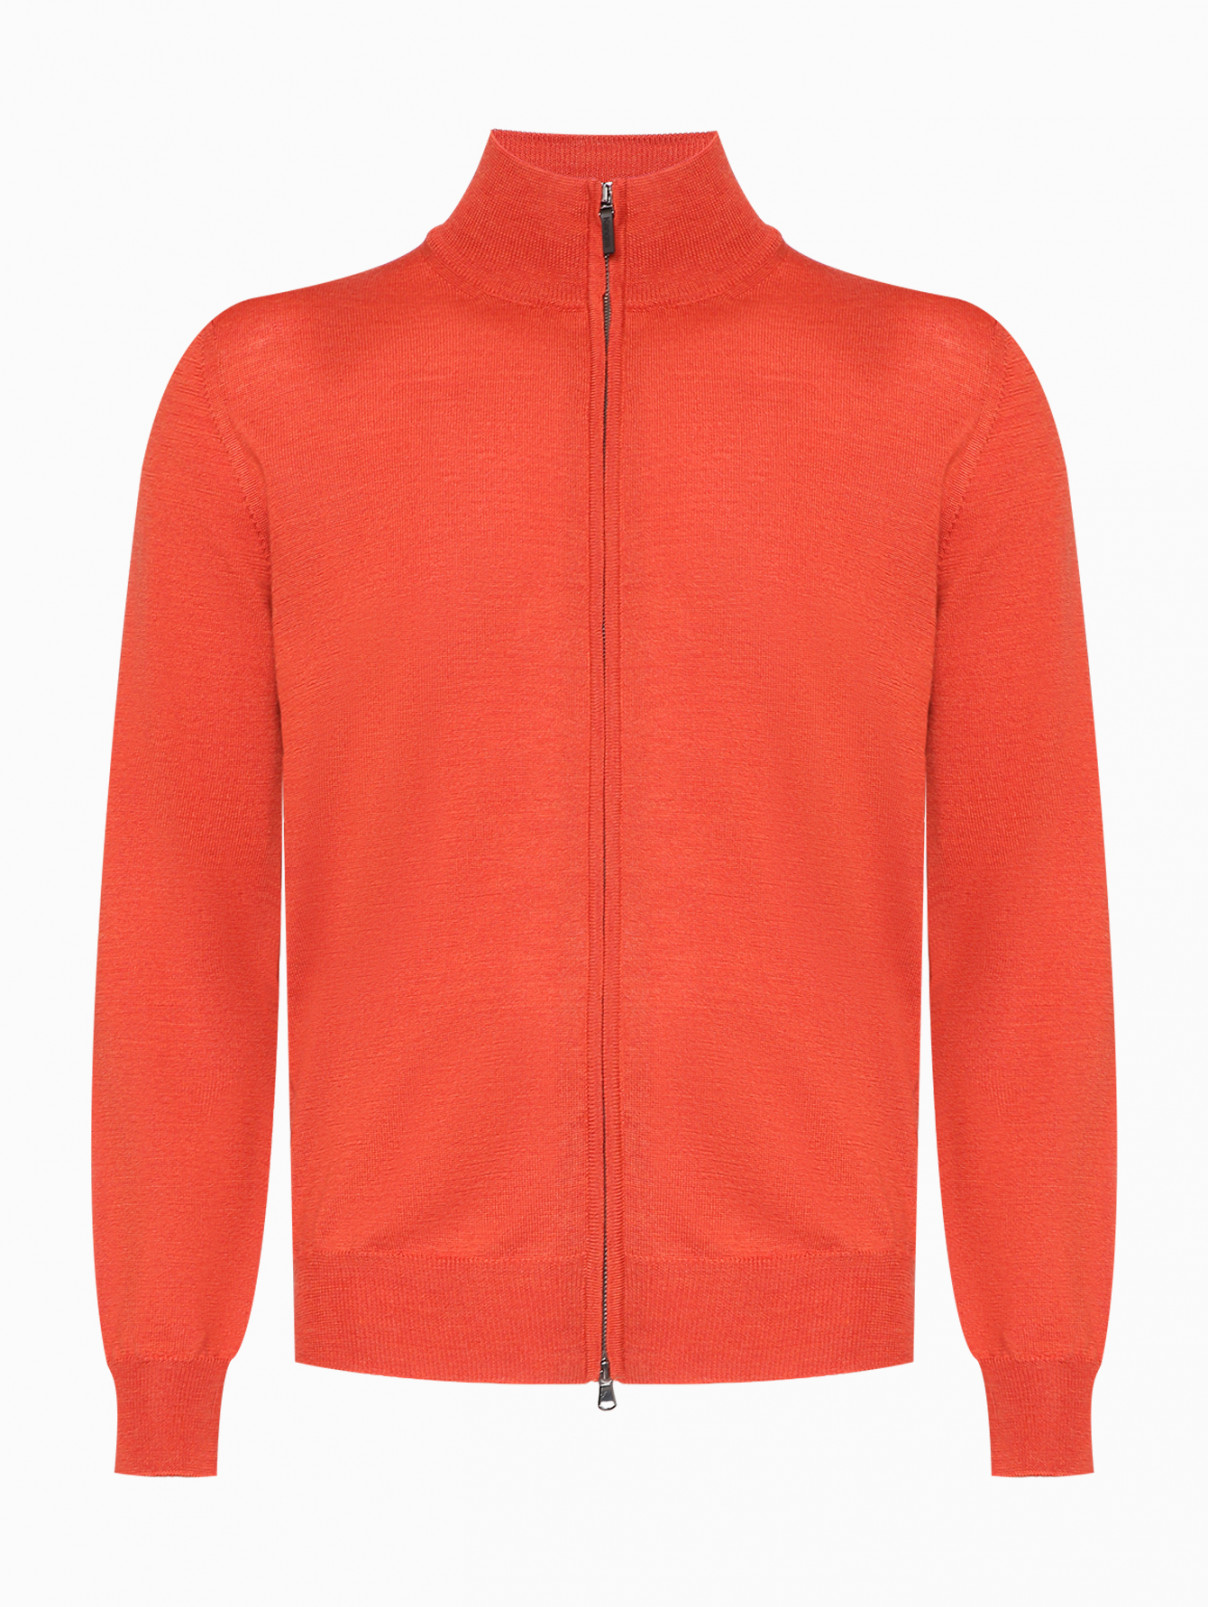 Базовый джемпер из шерсти на молнии Kangra Cashmere  –  Общий вид  – Цвет:  Оранжевый